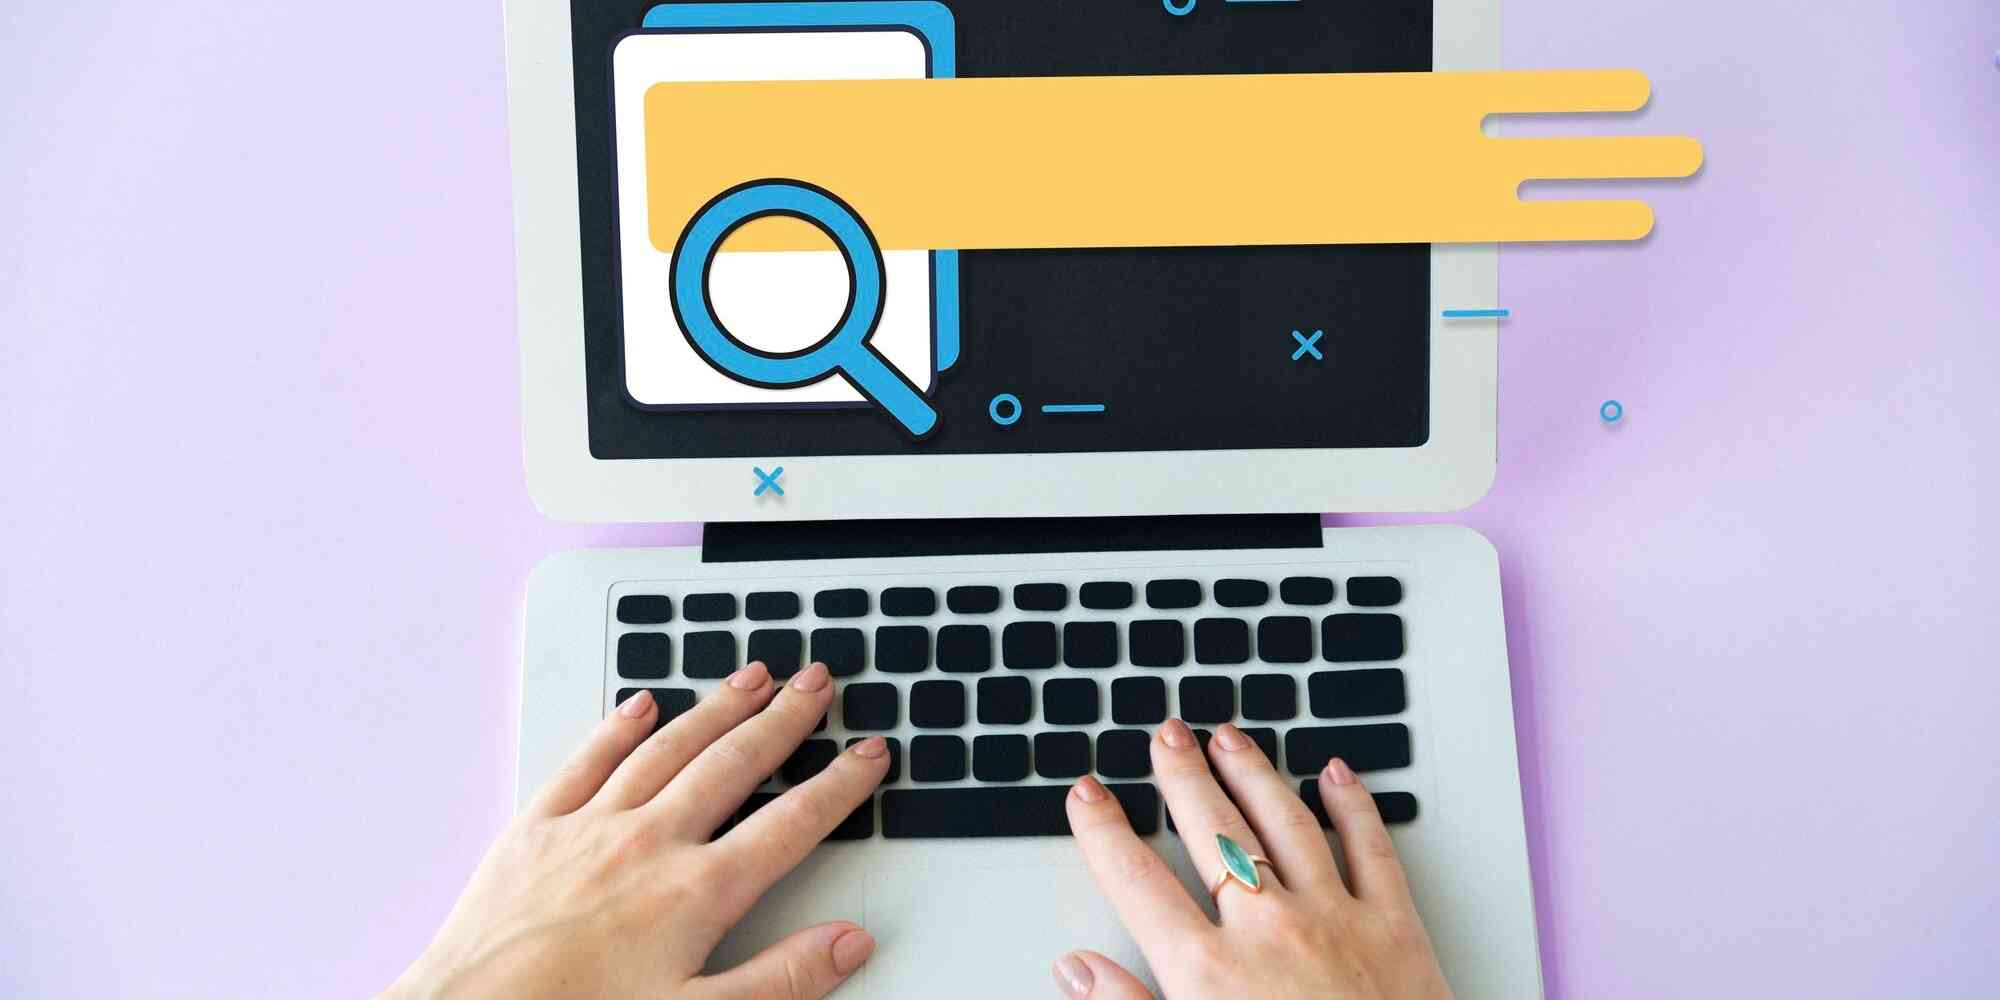 一台笔记本电脑，电脑屏幕上的一个大的搜索栏旁边有一个黄色的放大镜图案。搜索栏中填充了橙色的文字。在搜索栏下面还有一行蓝色的字，但无法看清楚是什么。电脑键盘是黑色的，用手正在键盘上打字。